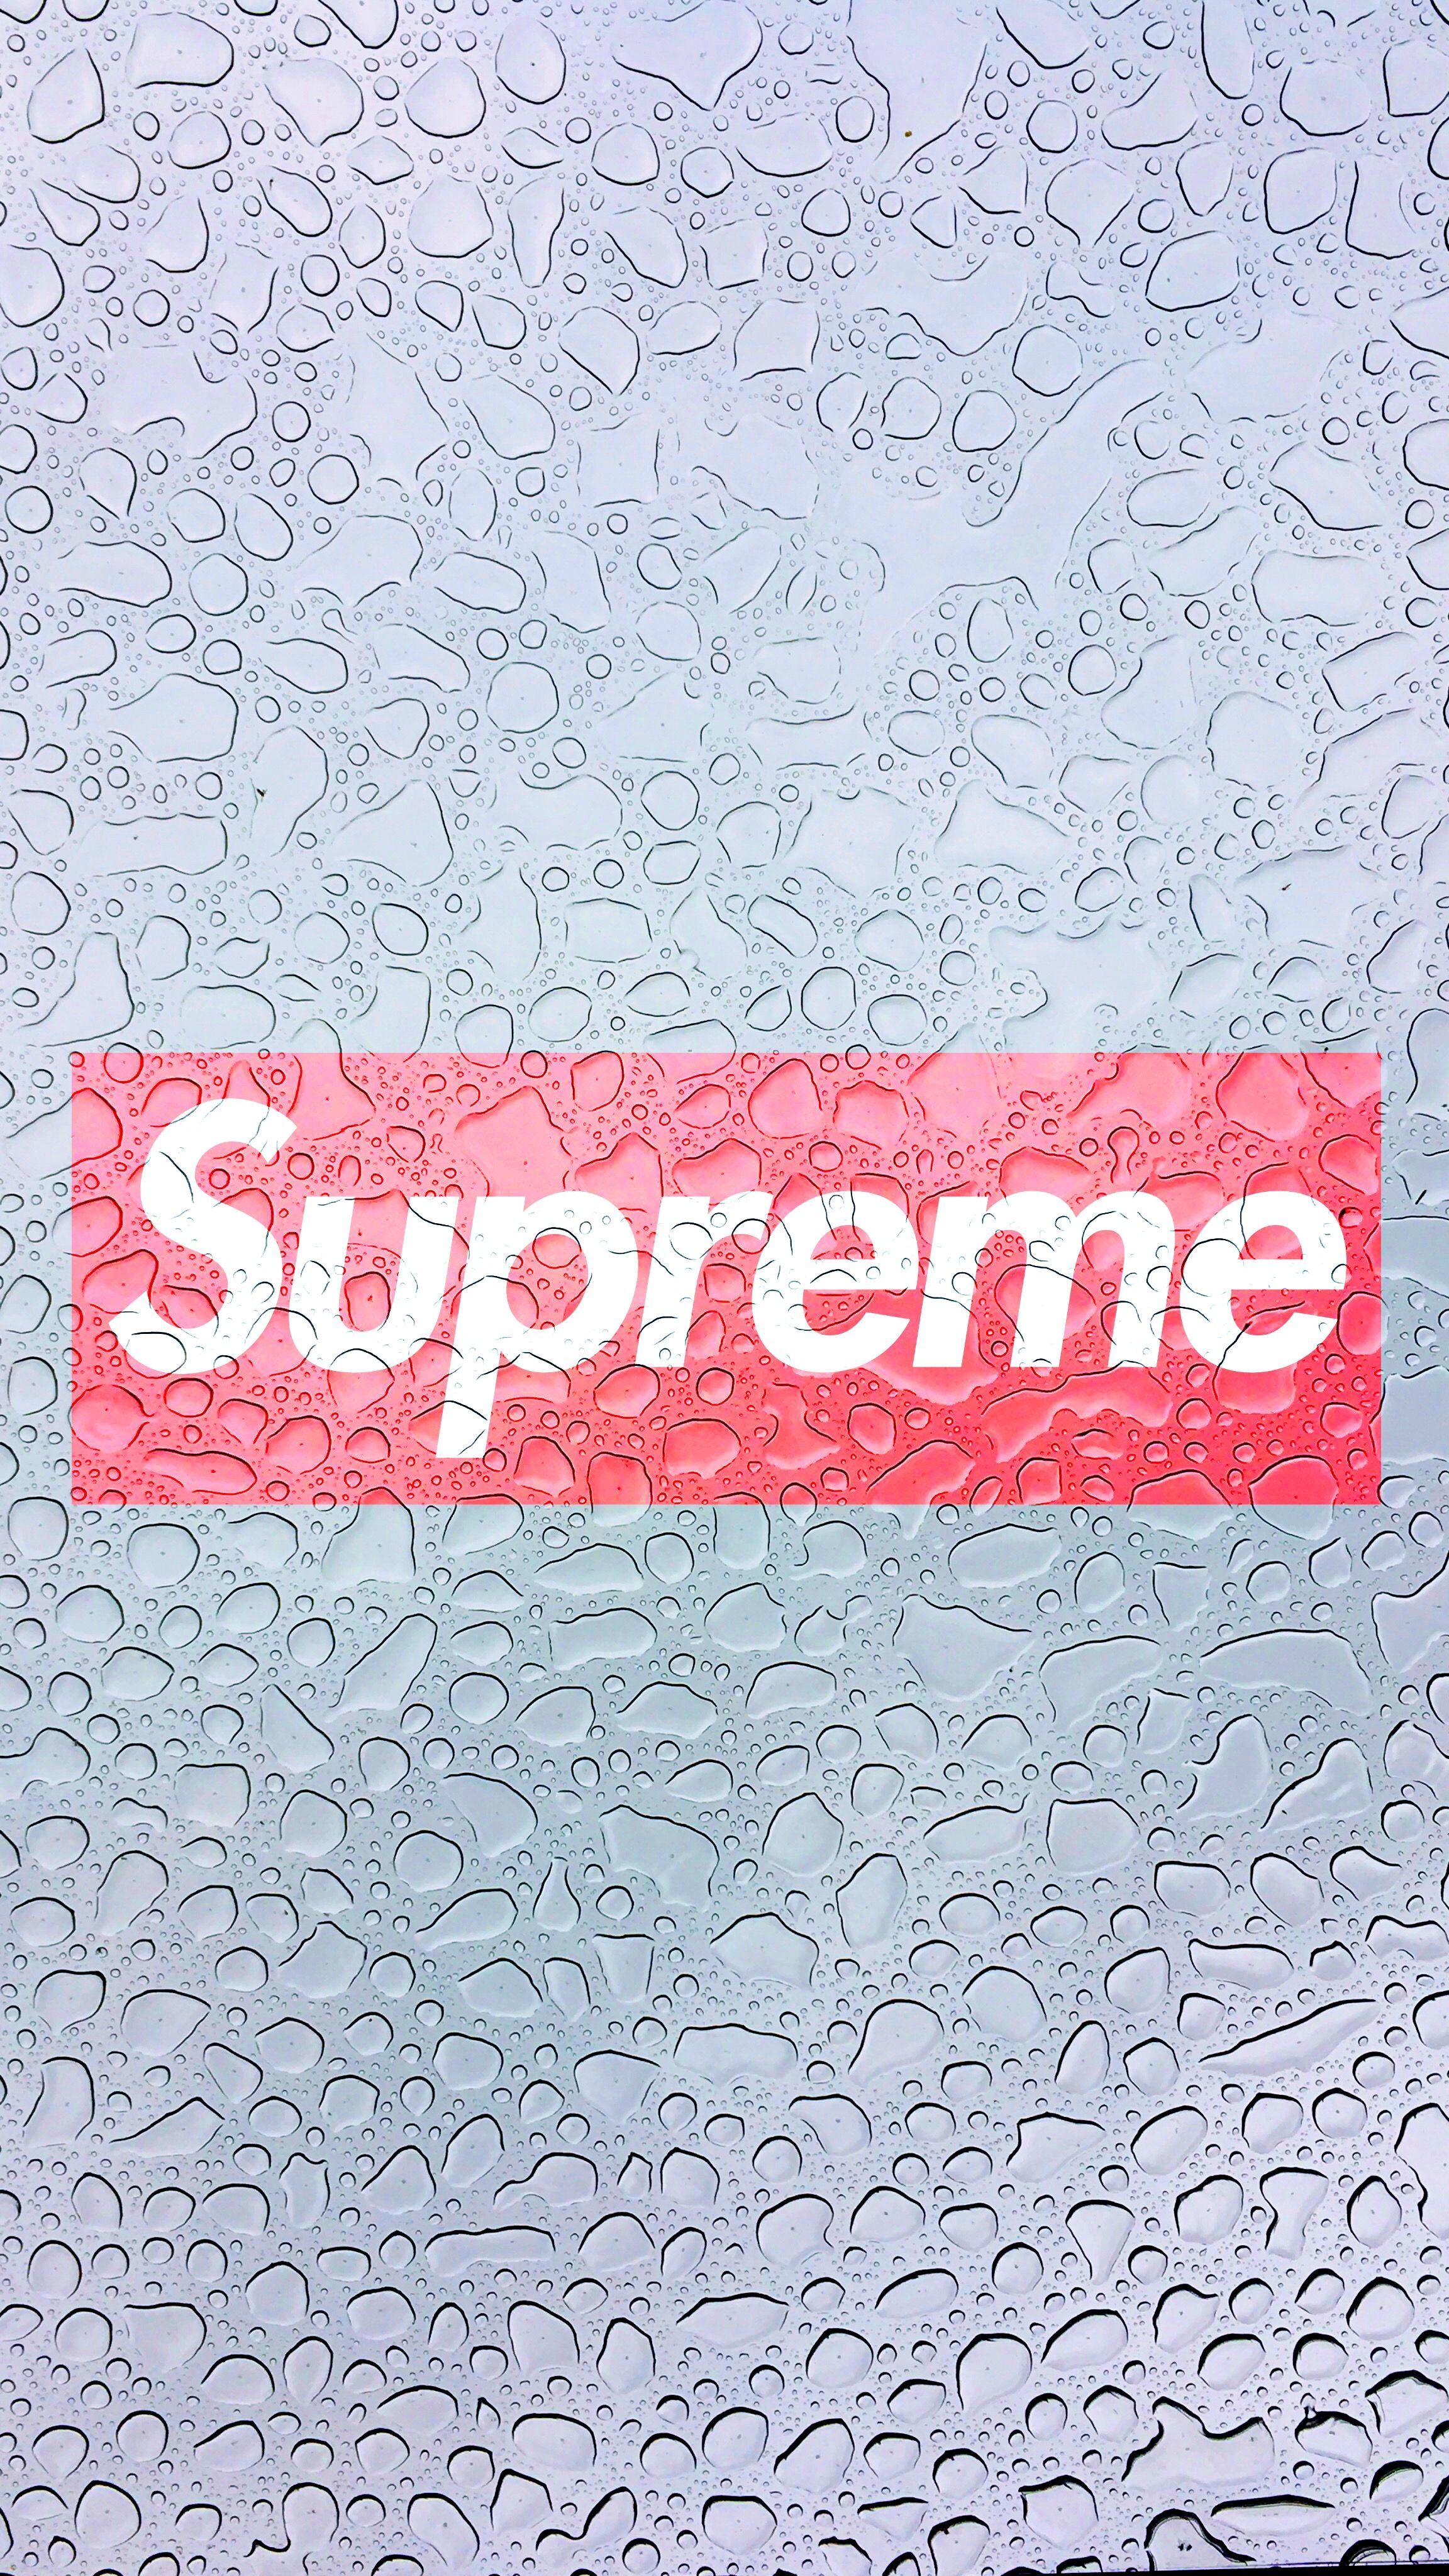 Supreme Logo. Supreme wallpaper, Supreme iphone wallpaper, Supreme logo